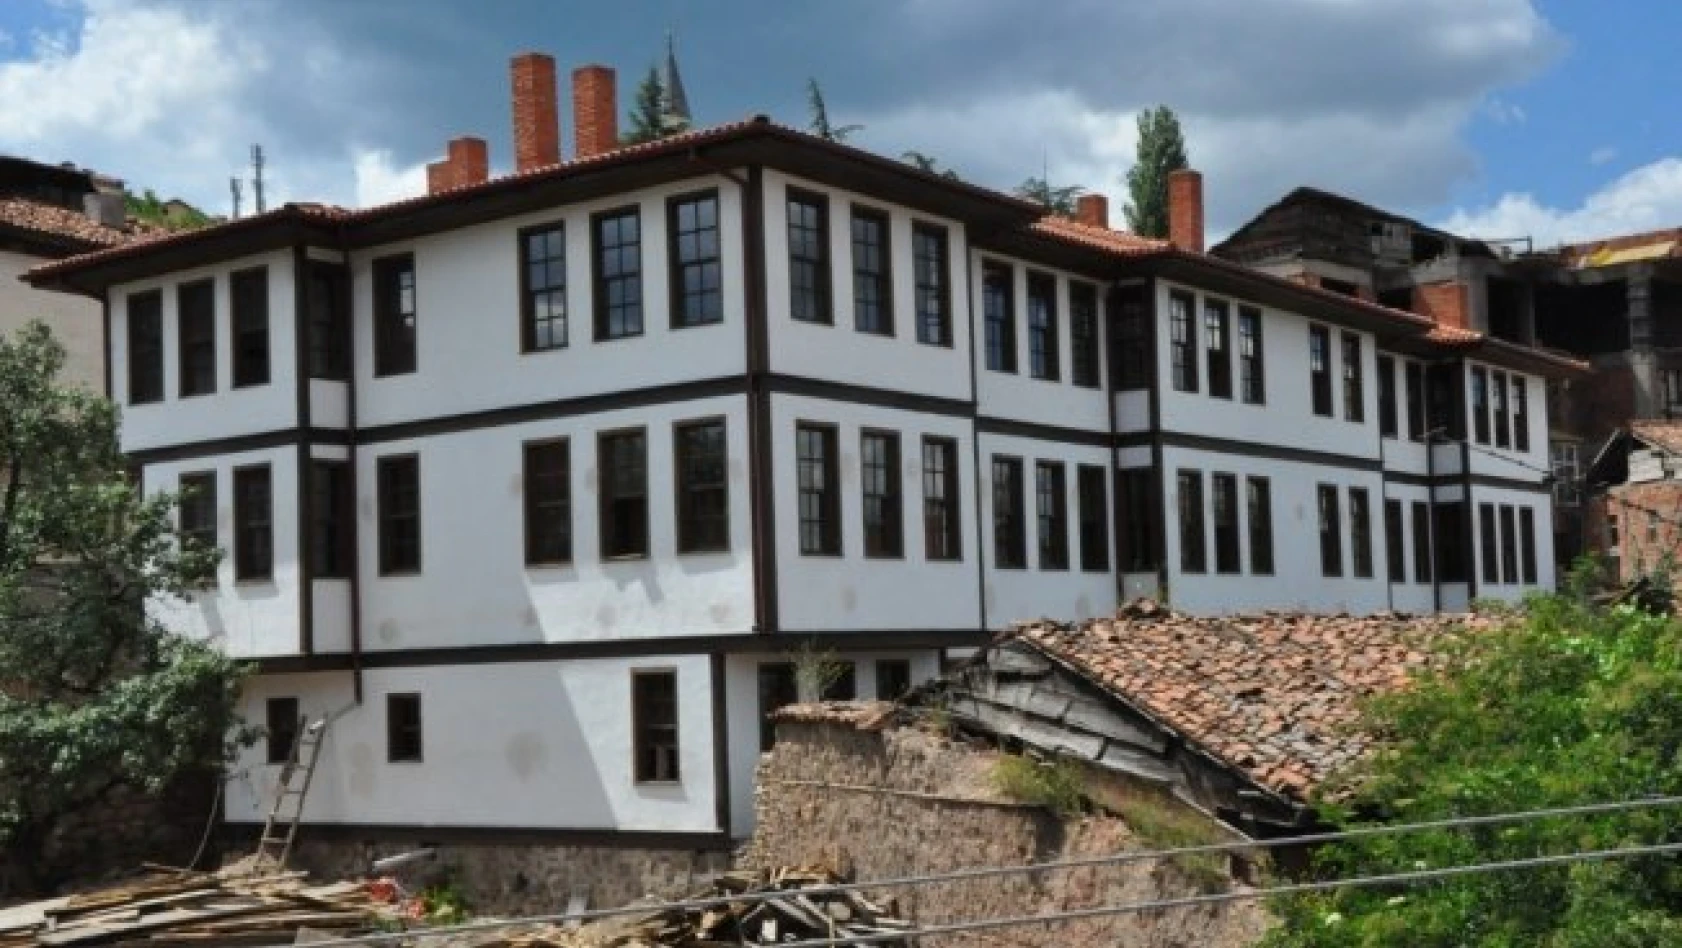 Kastamonu Belediyesi, tescilli binaların restorasyonu için harekete geçti